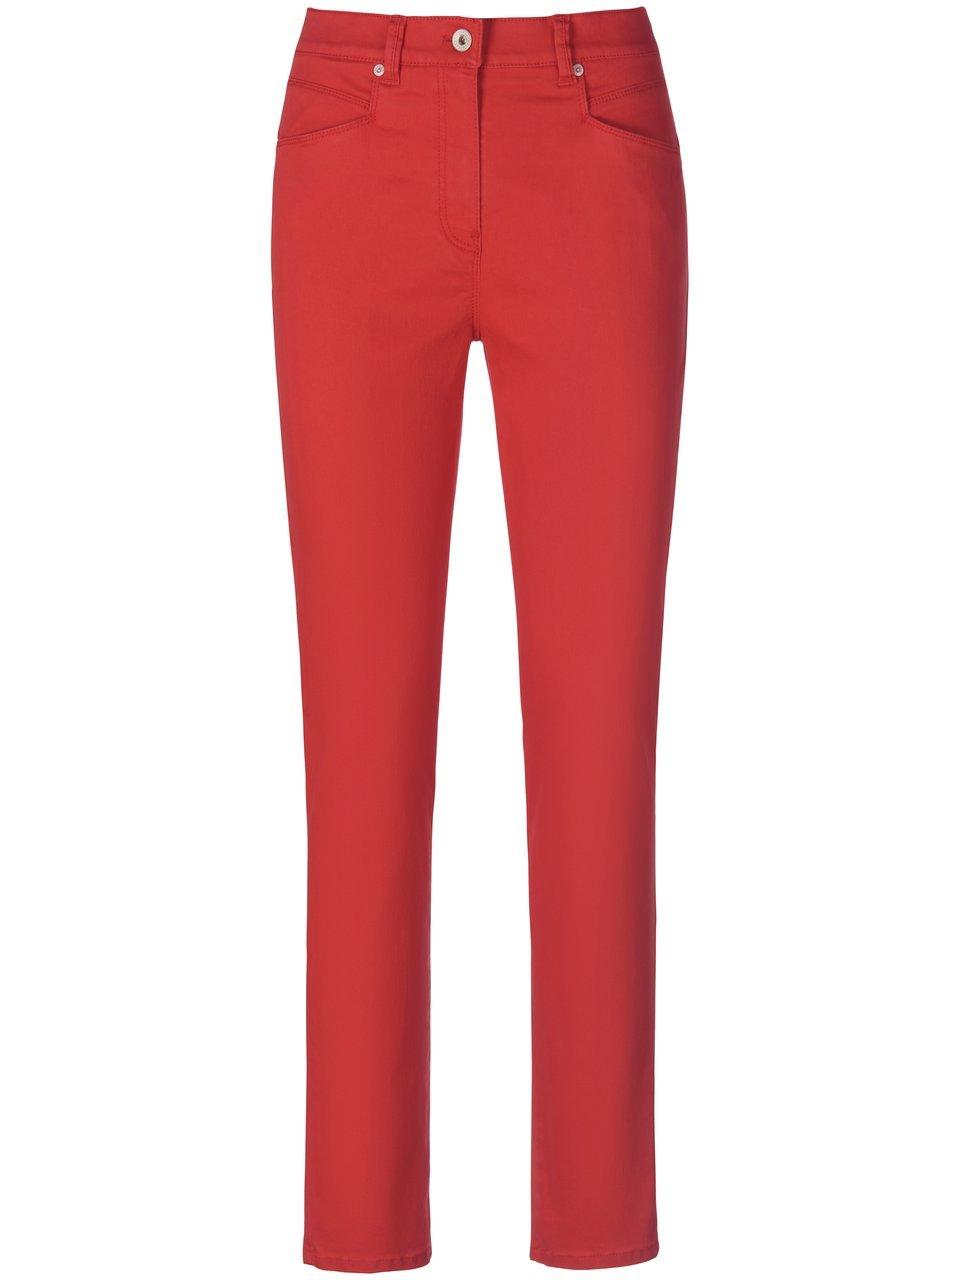 Corrigerende Comfort Plus-jeans Van Raphaela by Brax rood